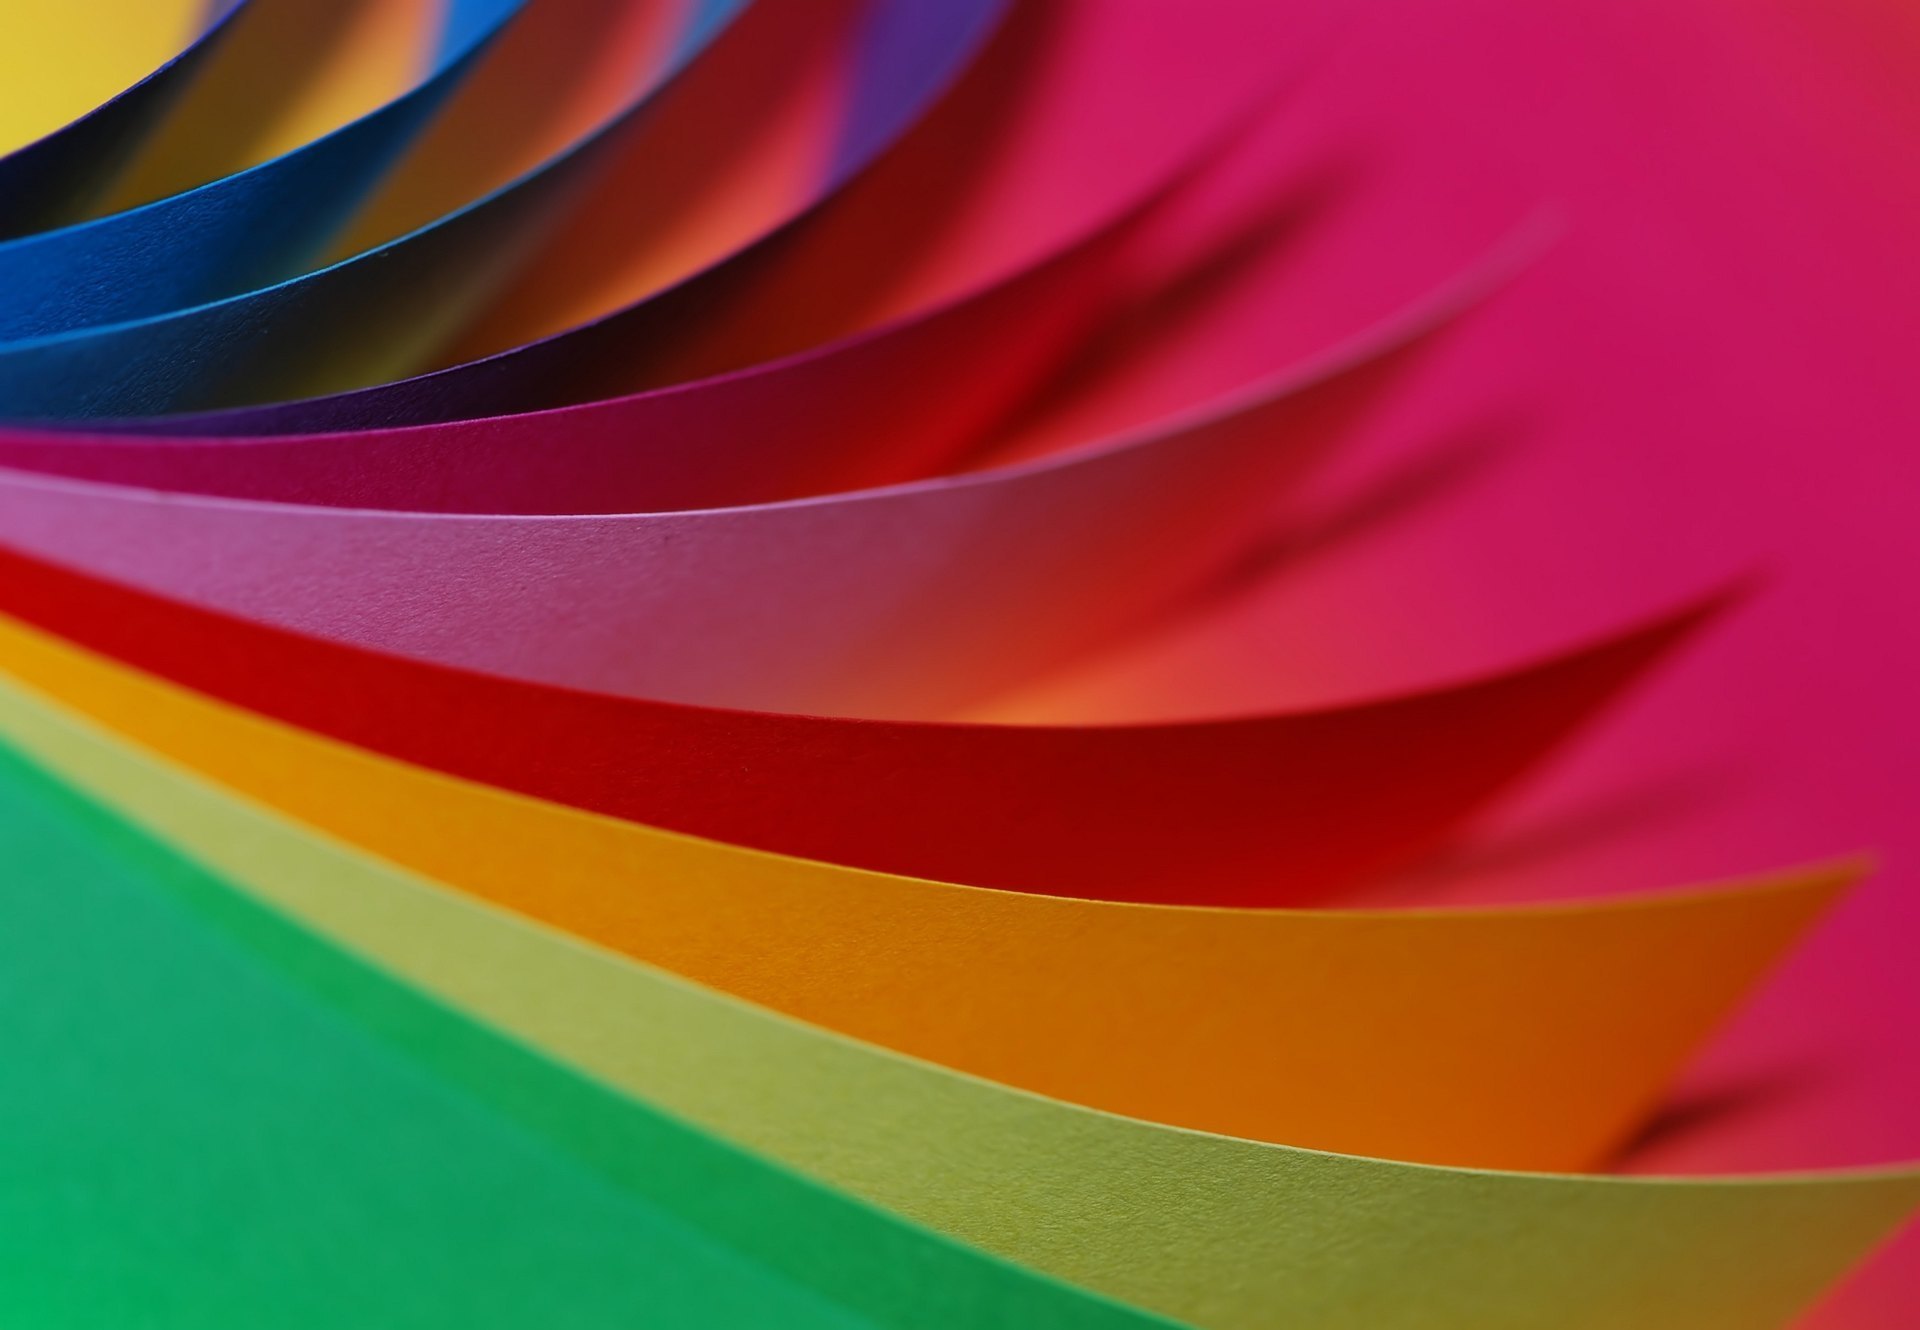 Psicologia das cores e fotografia: saiba como elas interagem